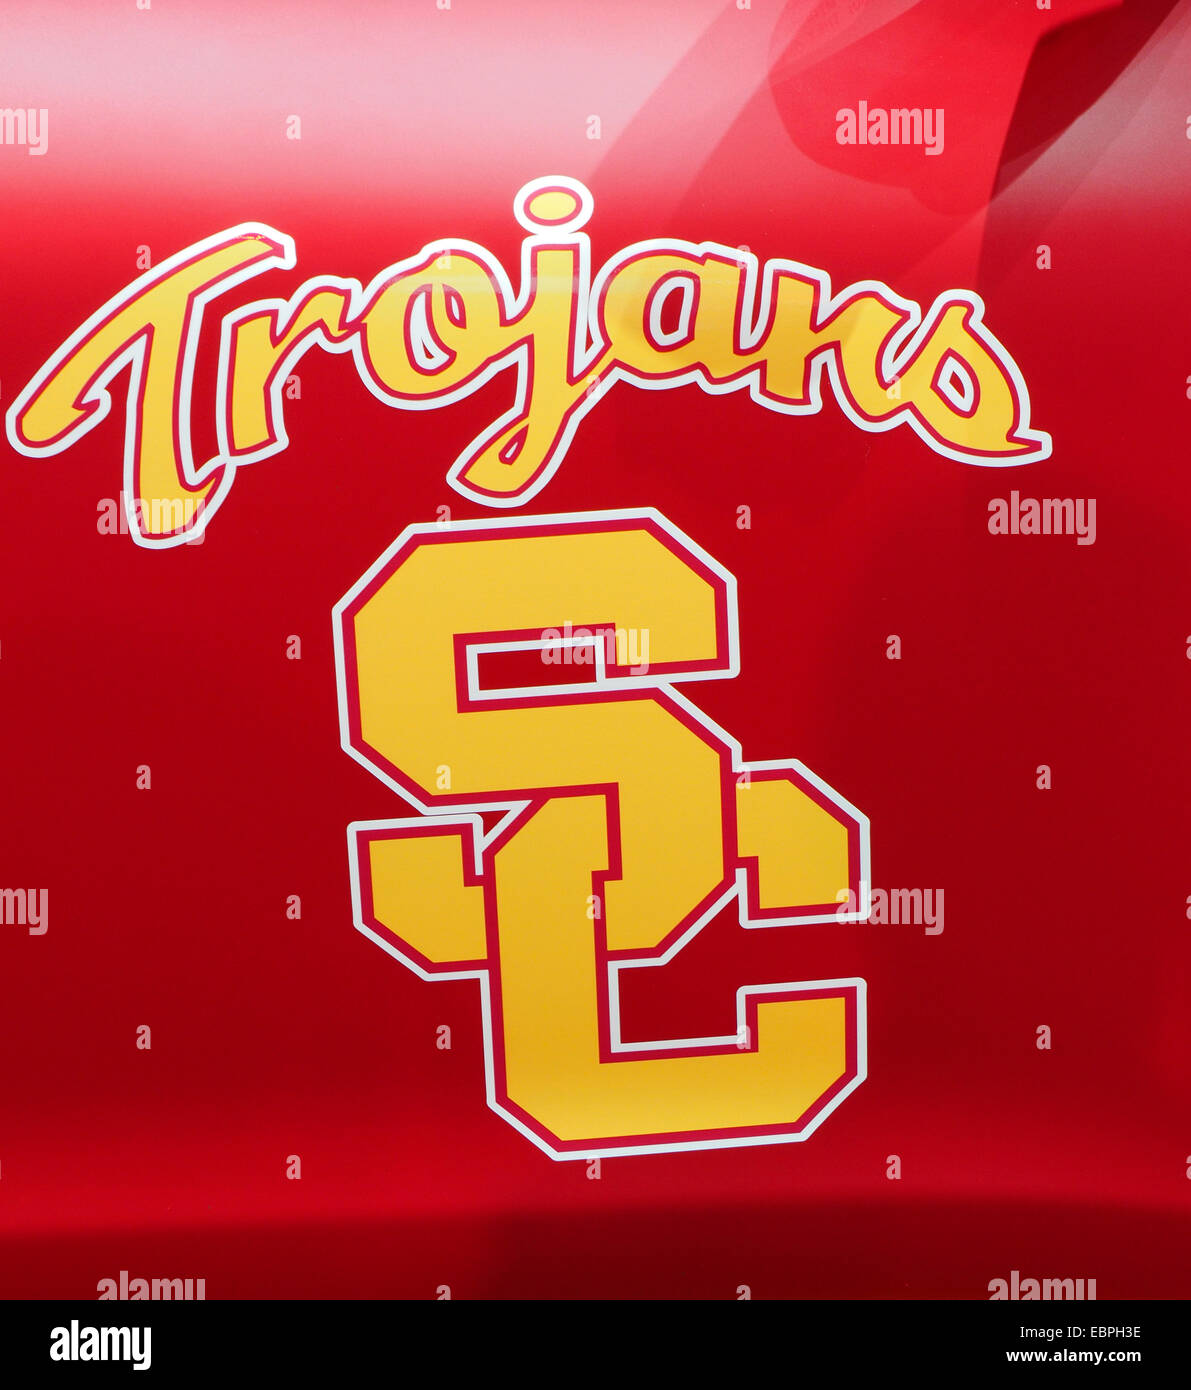 Coche en colores de la USC Trojan equipo de fútbol con logos Foto de stock